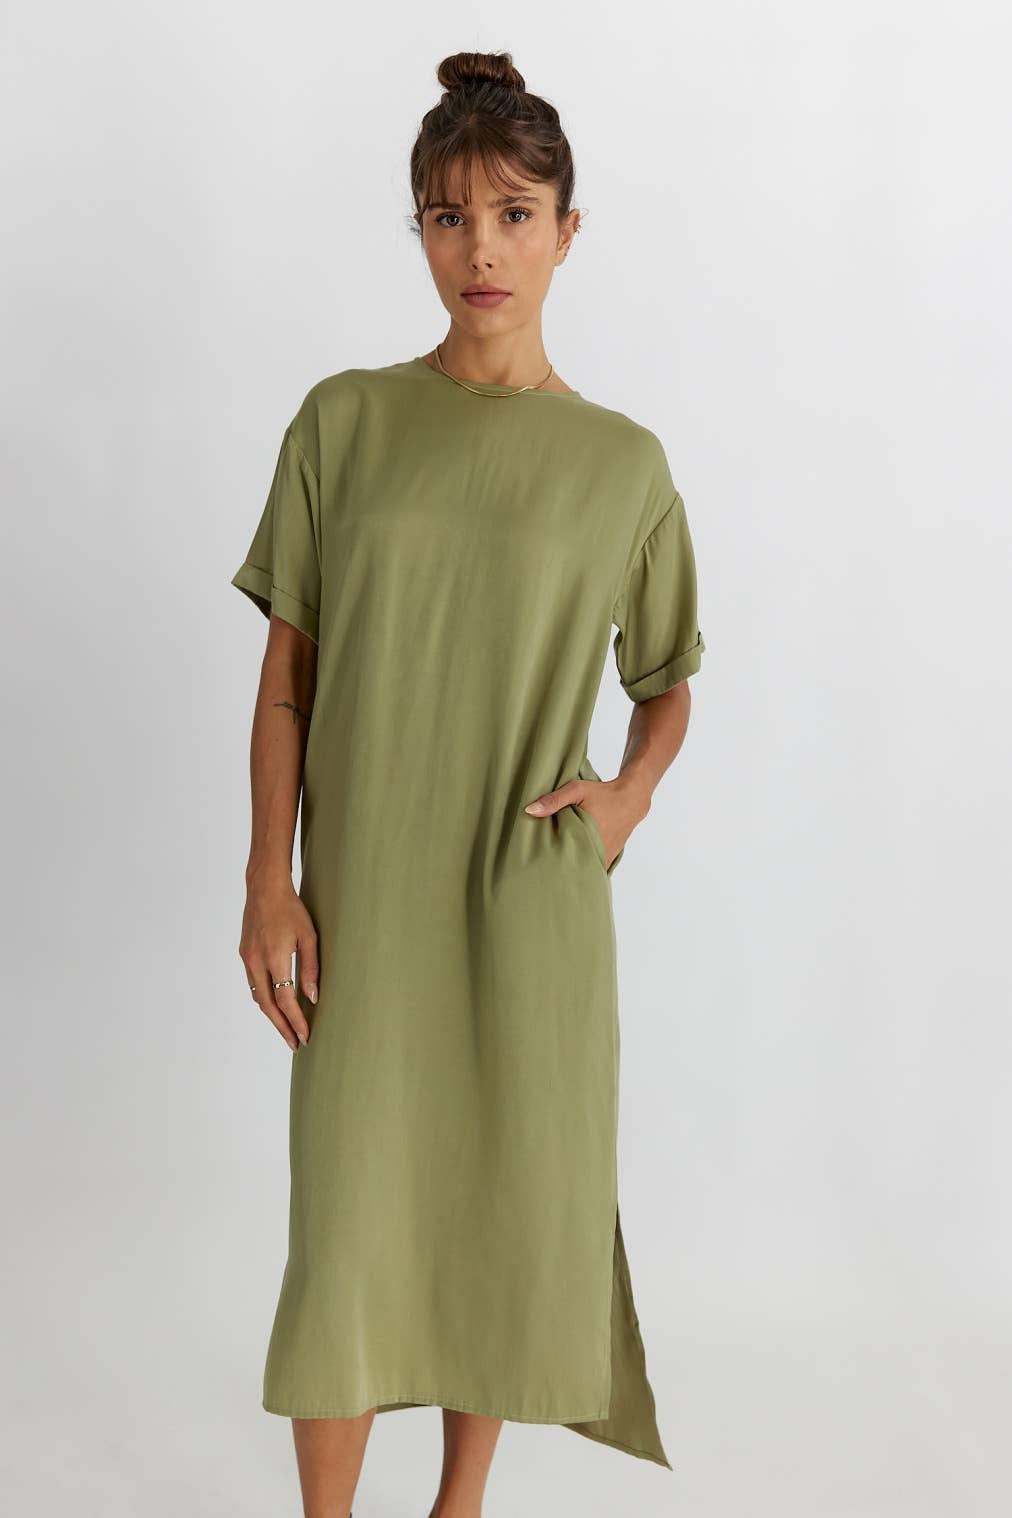 The Peyton Dress - Green